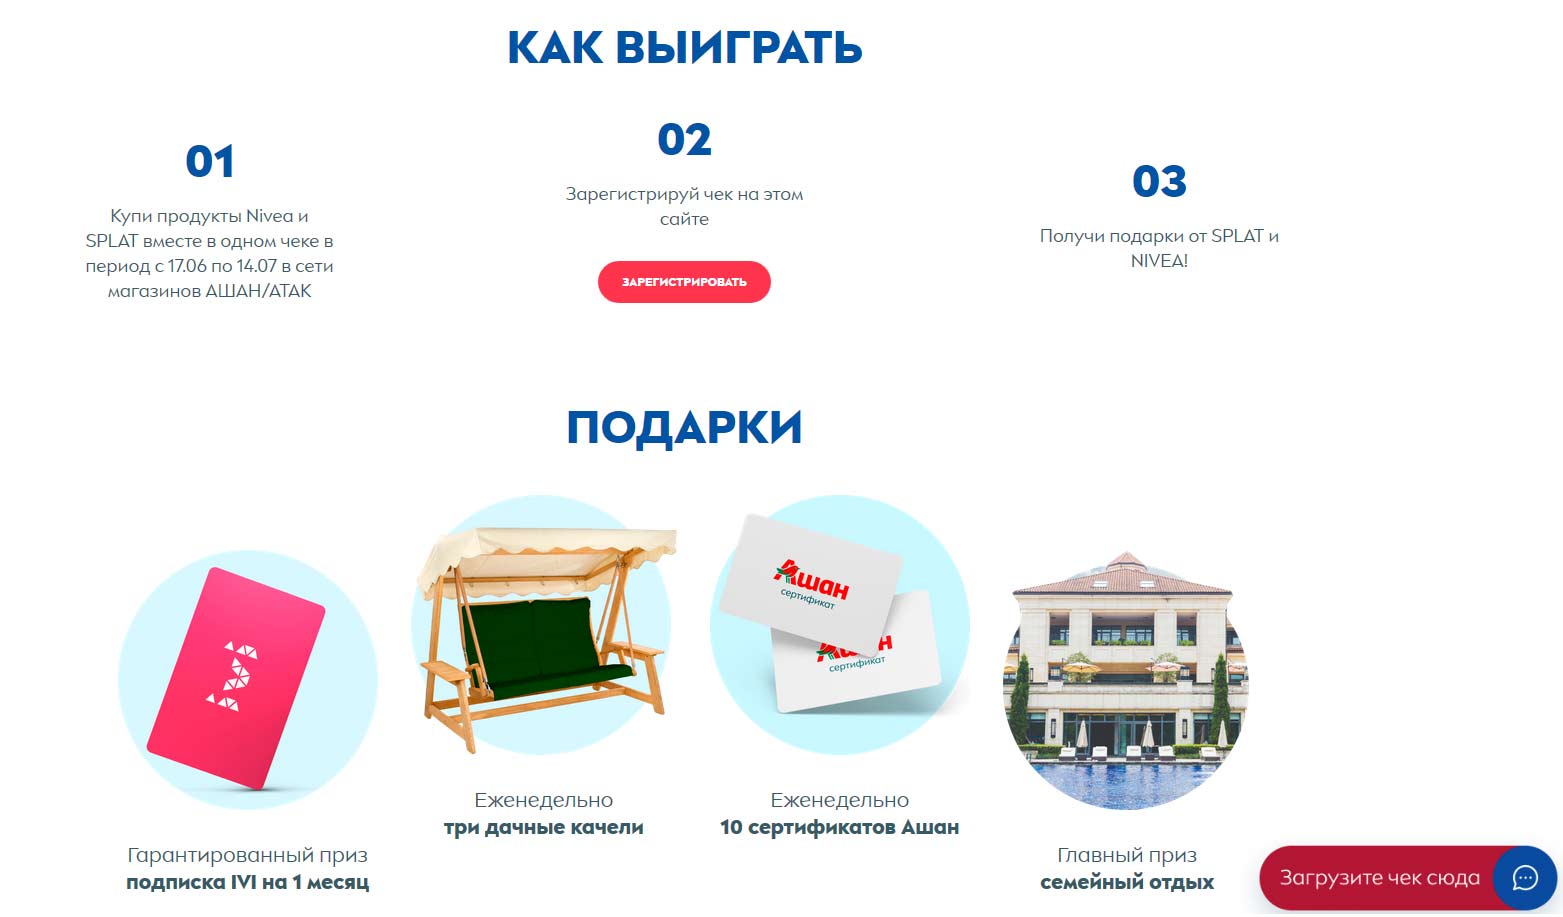 www.niveasplatpromo.ru как зарегистрироваться